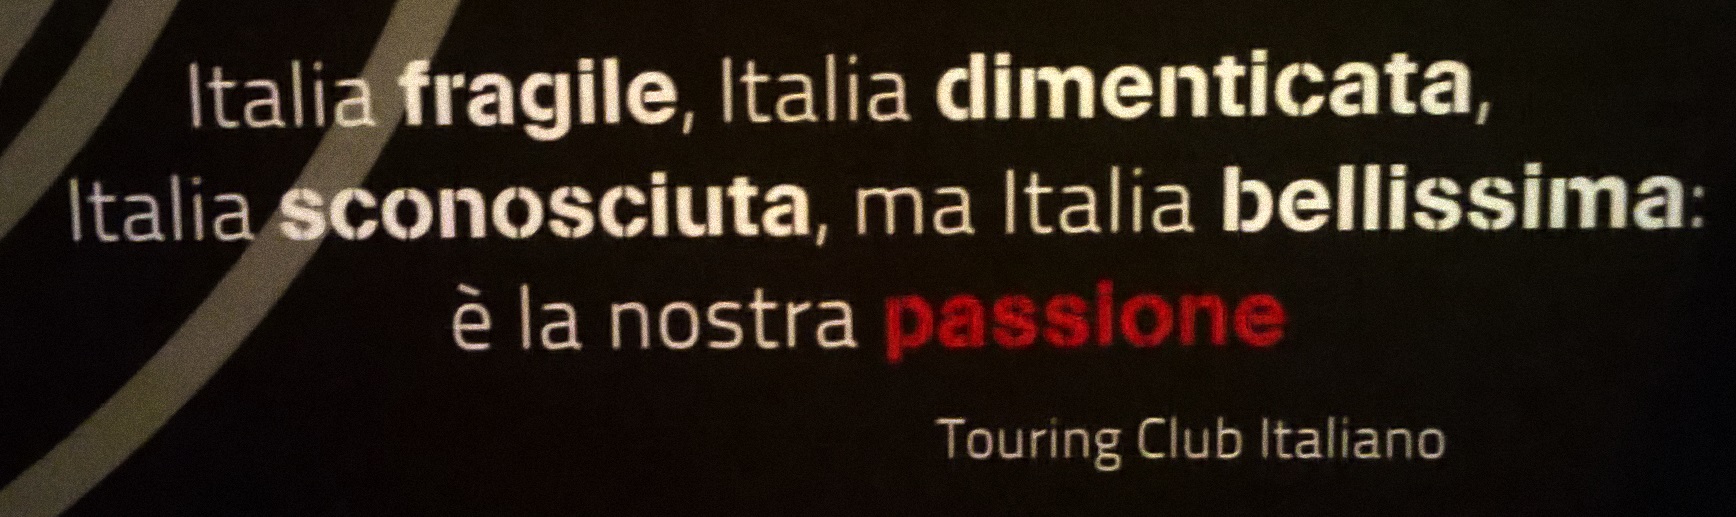 Passione tricolore…in viaggio con l’Italia, la mostra di Touring Club